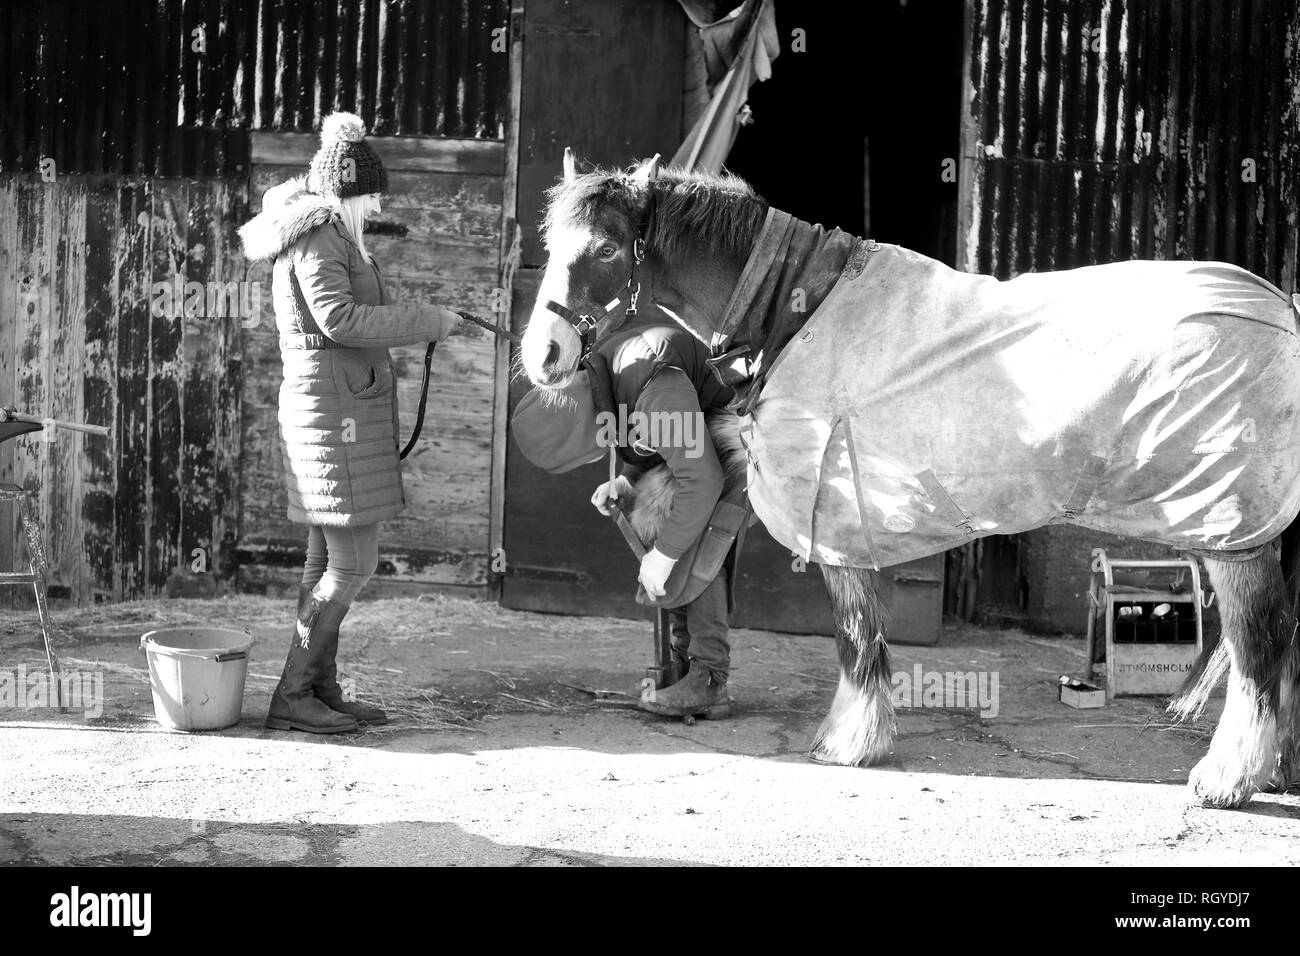 Ein gutes Beispiel für einen landwirtschaftlichen Beruf, ein hufschmied bei der Arbeit shoding ein Pferd. Stockfoto